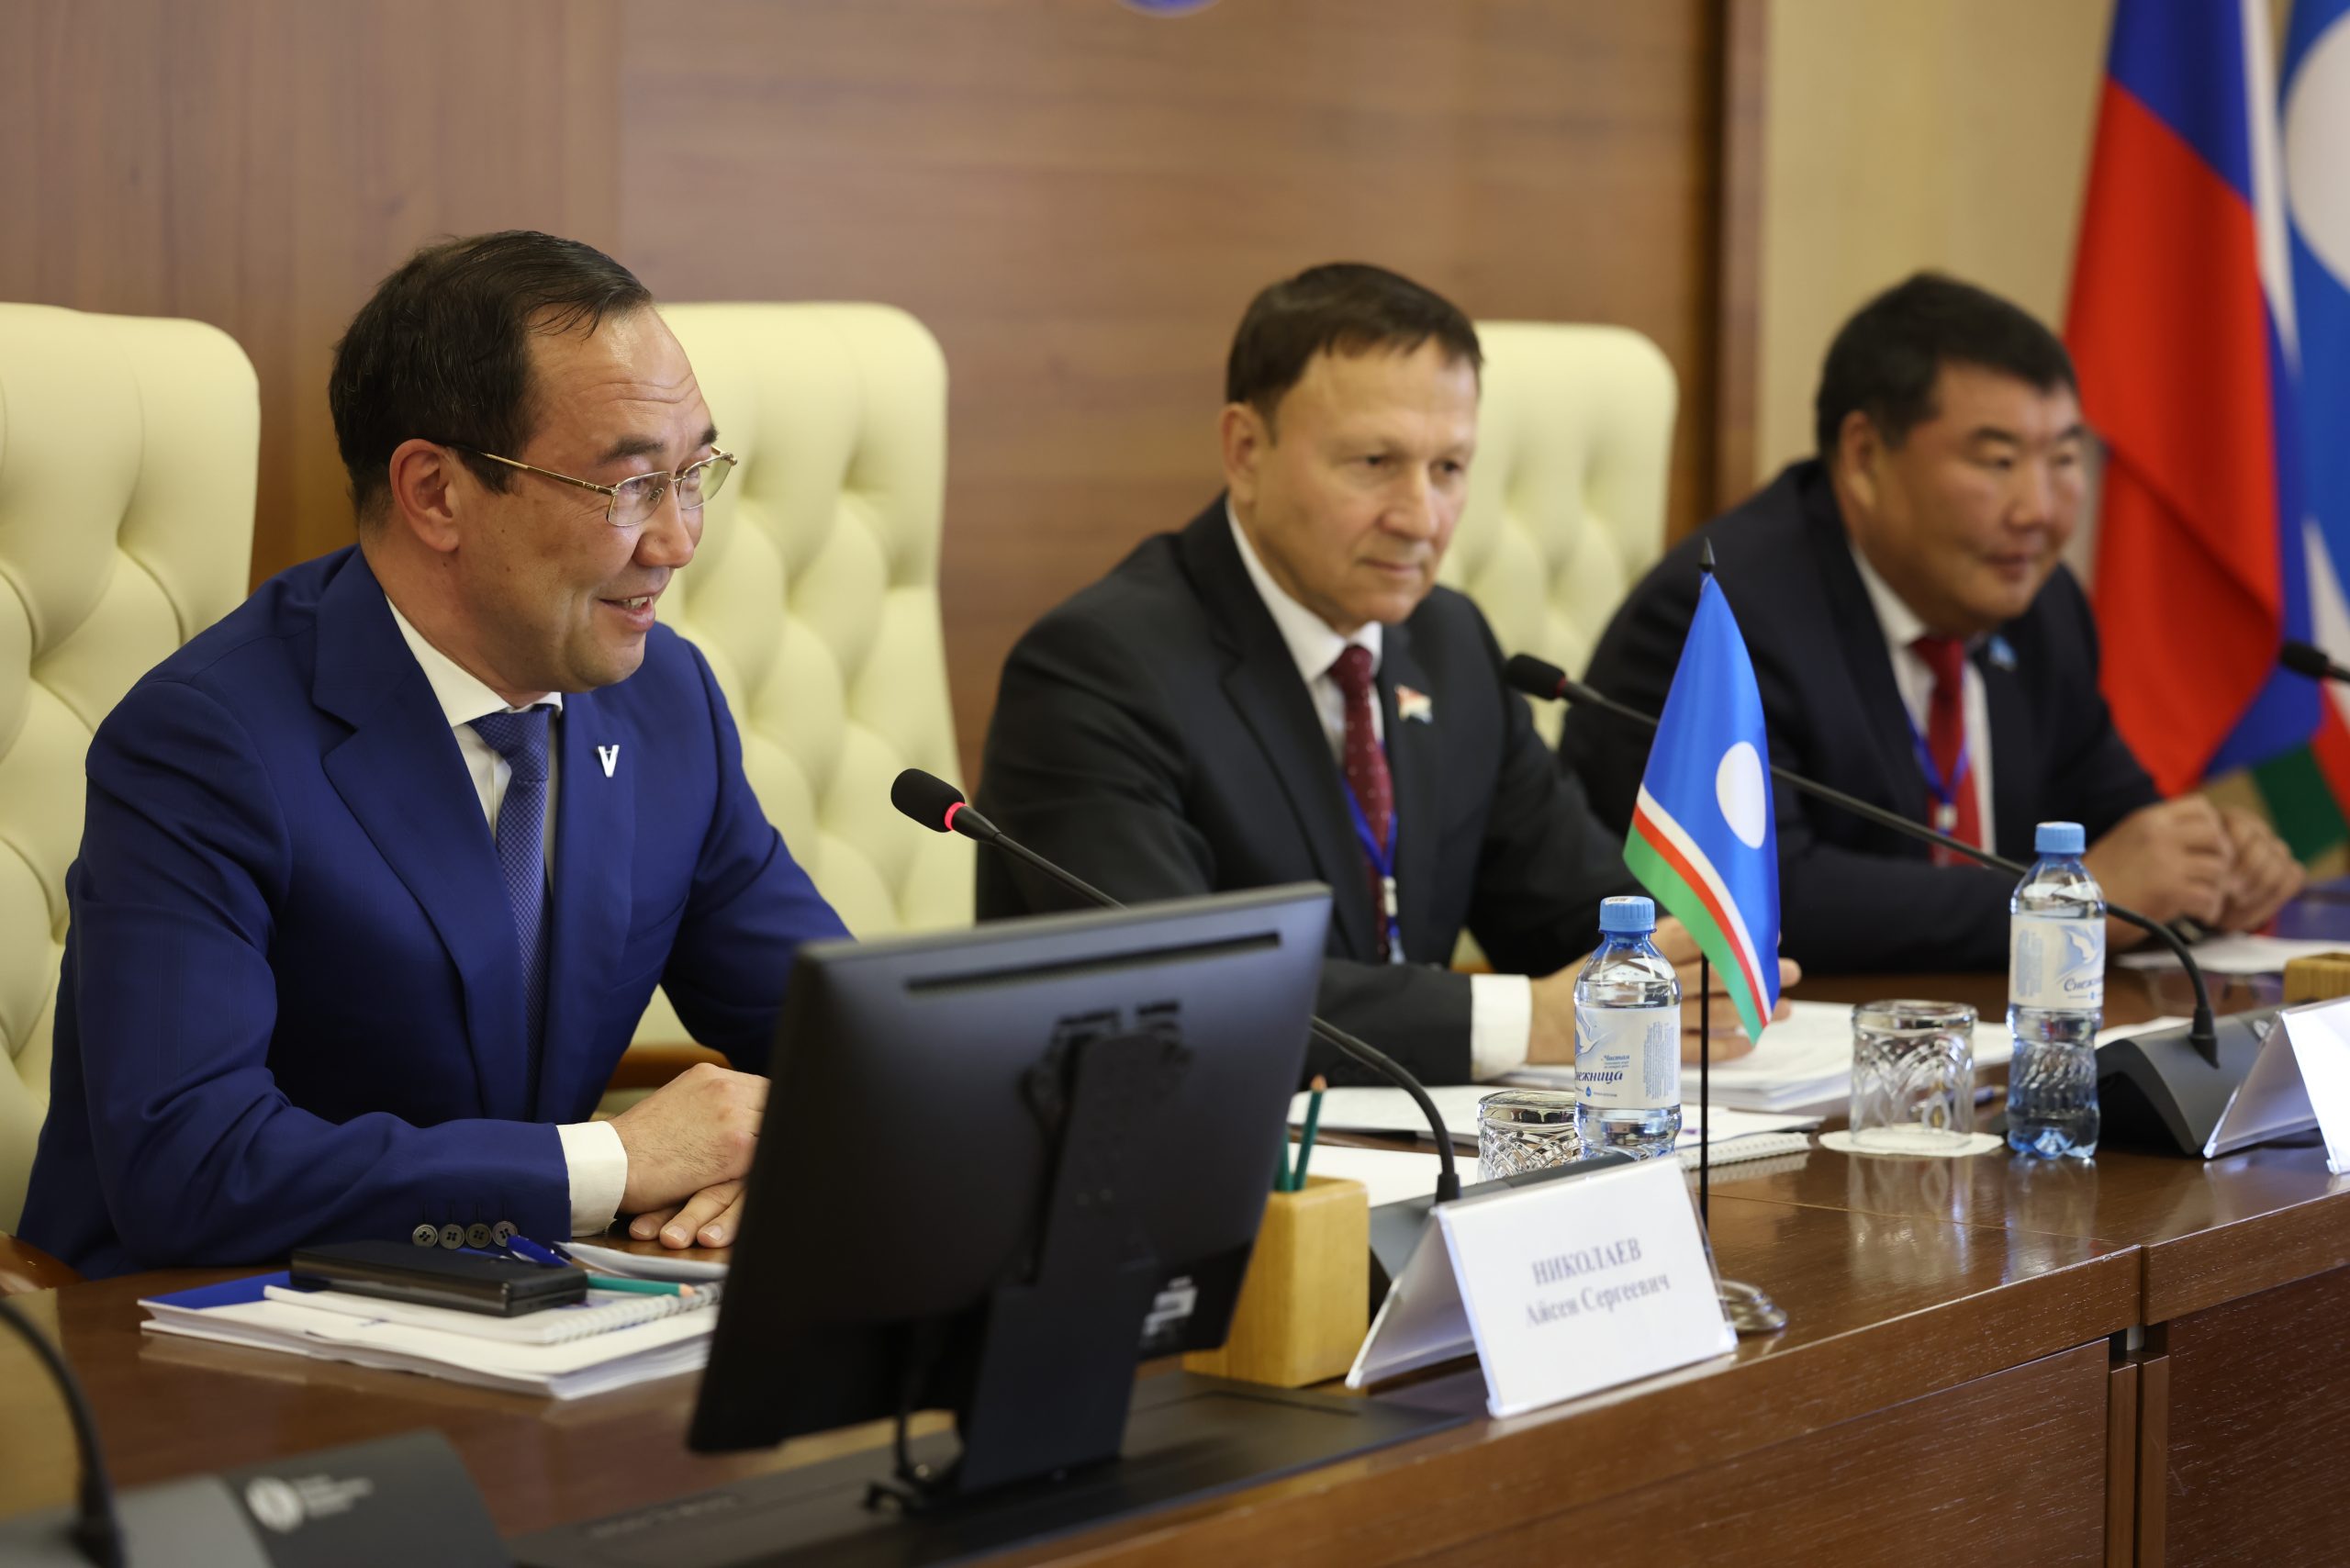 Айсен Николаев: «Дальневосточные регионы – это крепкий экономический тыл государства»